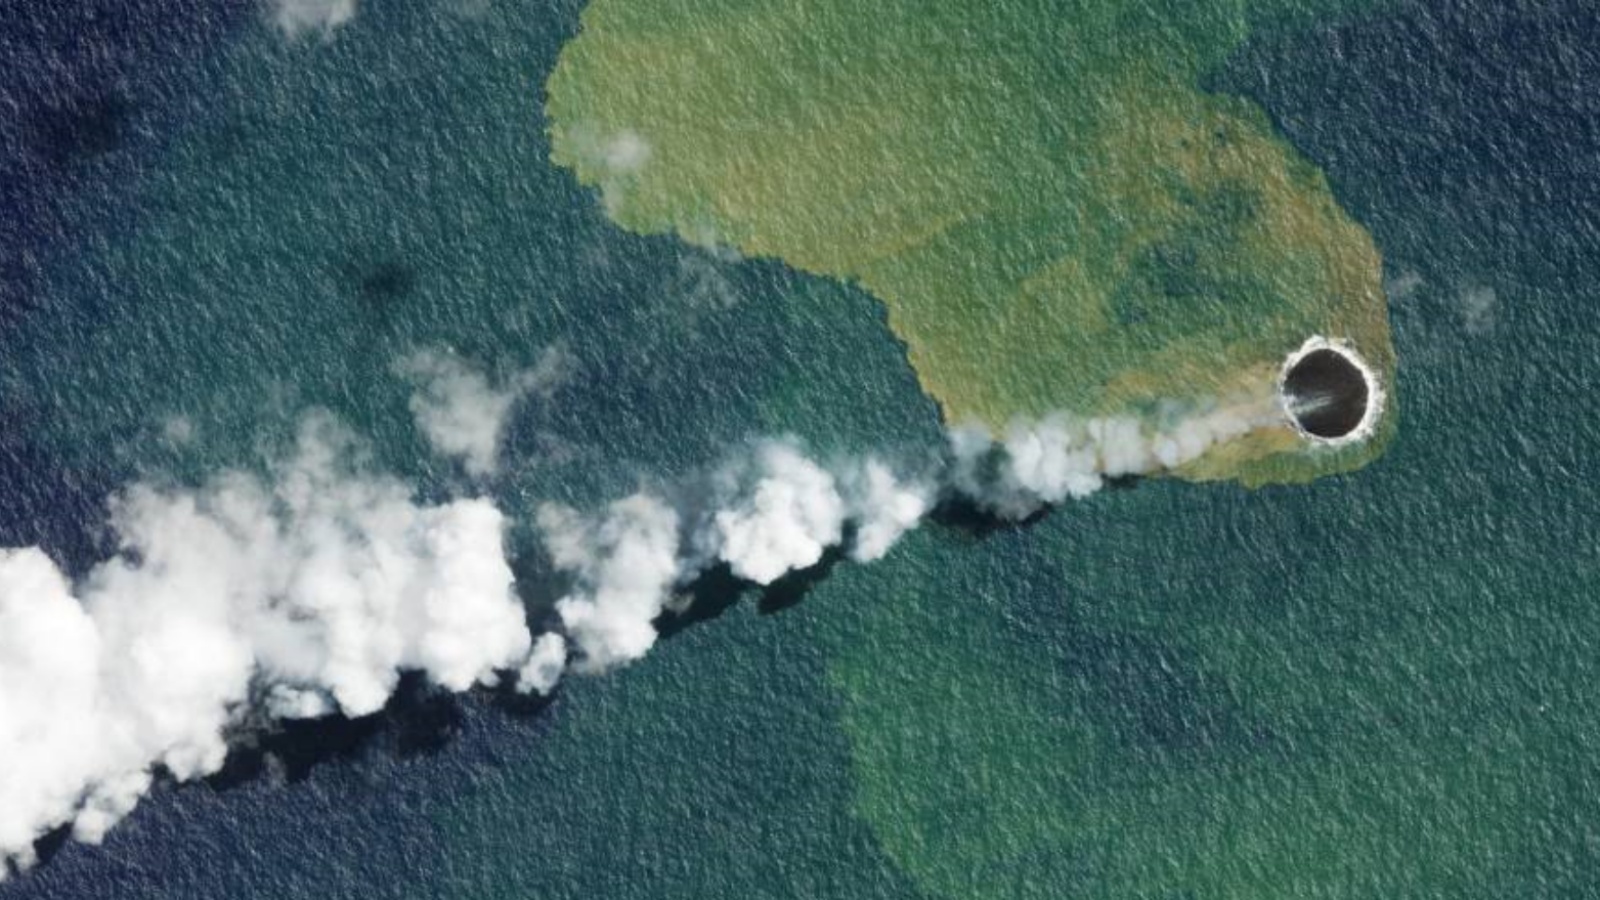 صور الأقمار الصناعية المنشورة في 16 سبتمبر 2022 بواسطة Planet Labs PBC والتُقطت في 14 سبتمبر 2022، تظهر بركان هوم ريف في تونغا، حيث لاحظ الباحثون في وقت سابق من هذا الأسبوع نشاطًا زلزاليًا جديدًا